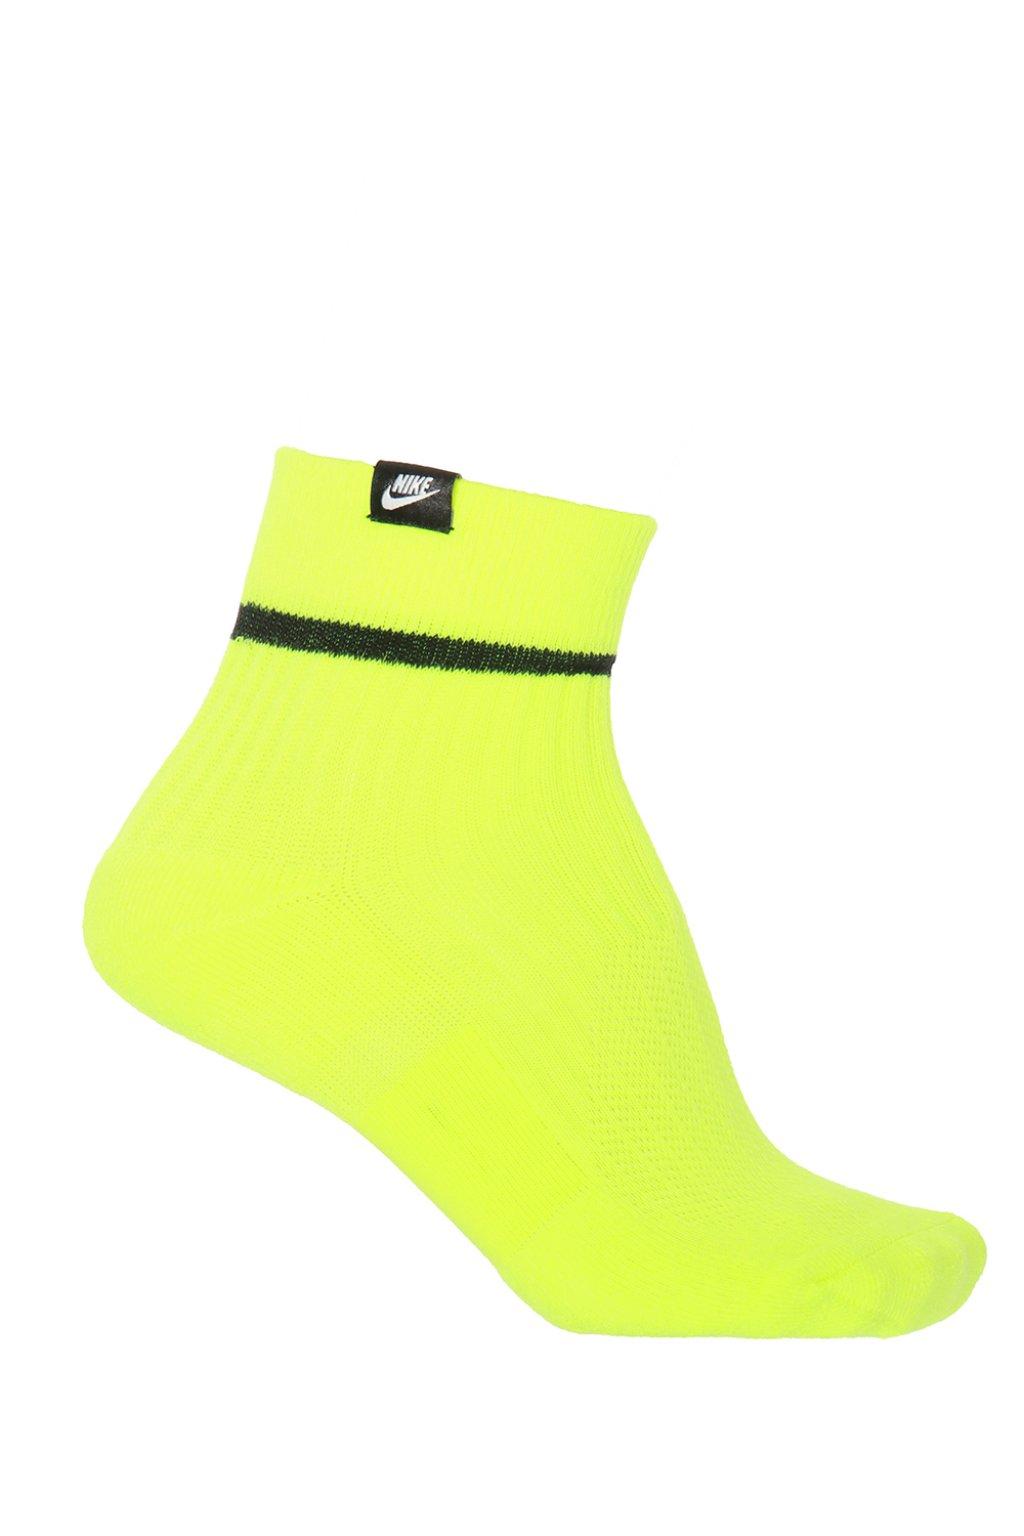 Nike Hi-vis Neon Socks for Men | Lyst